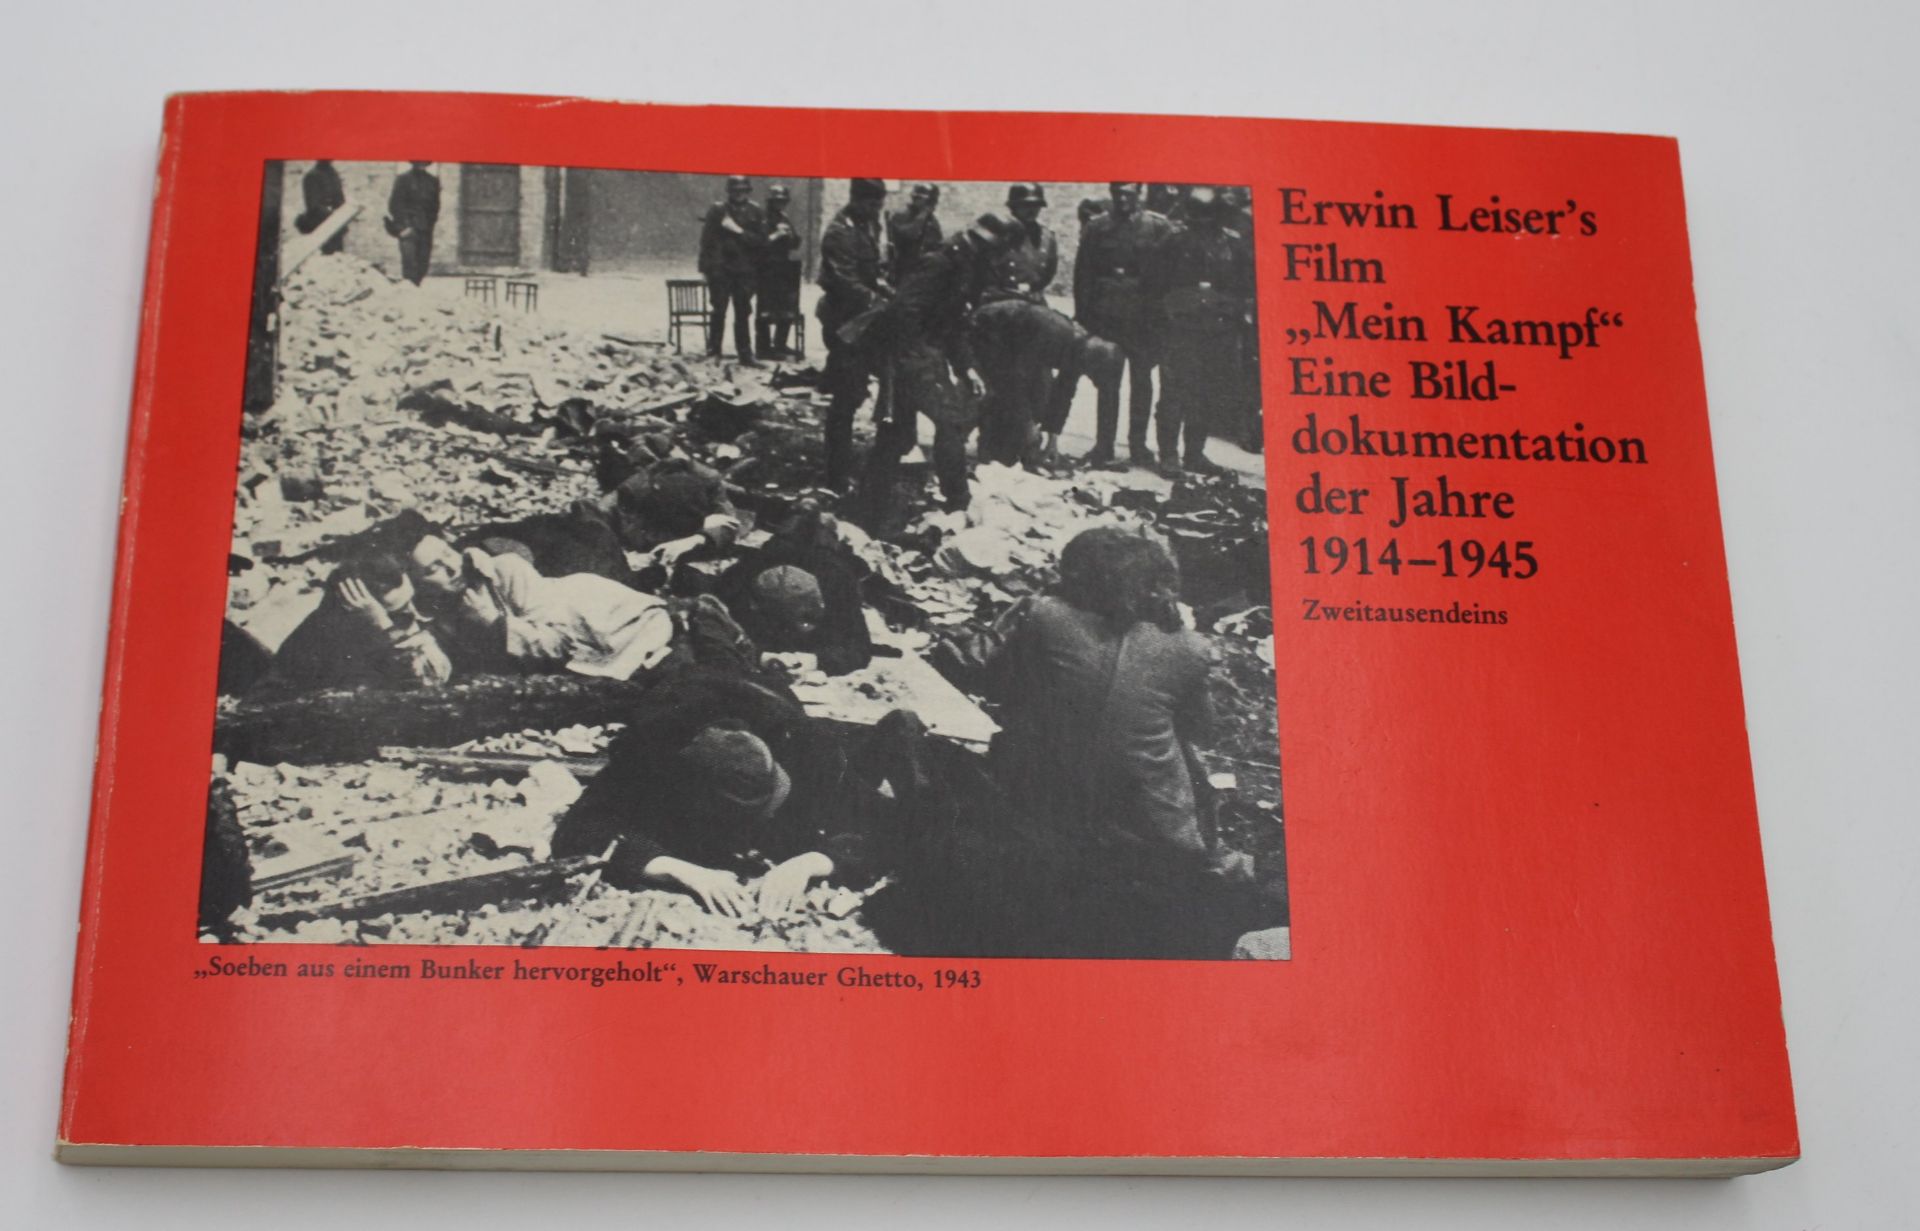 Erwin Leiser's Film "Mein Kampf" - Eine Bilddokumentation der Jahre 1914-1945, 1. Auflage 1976